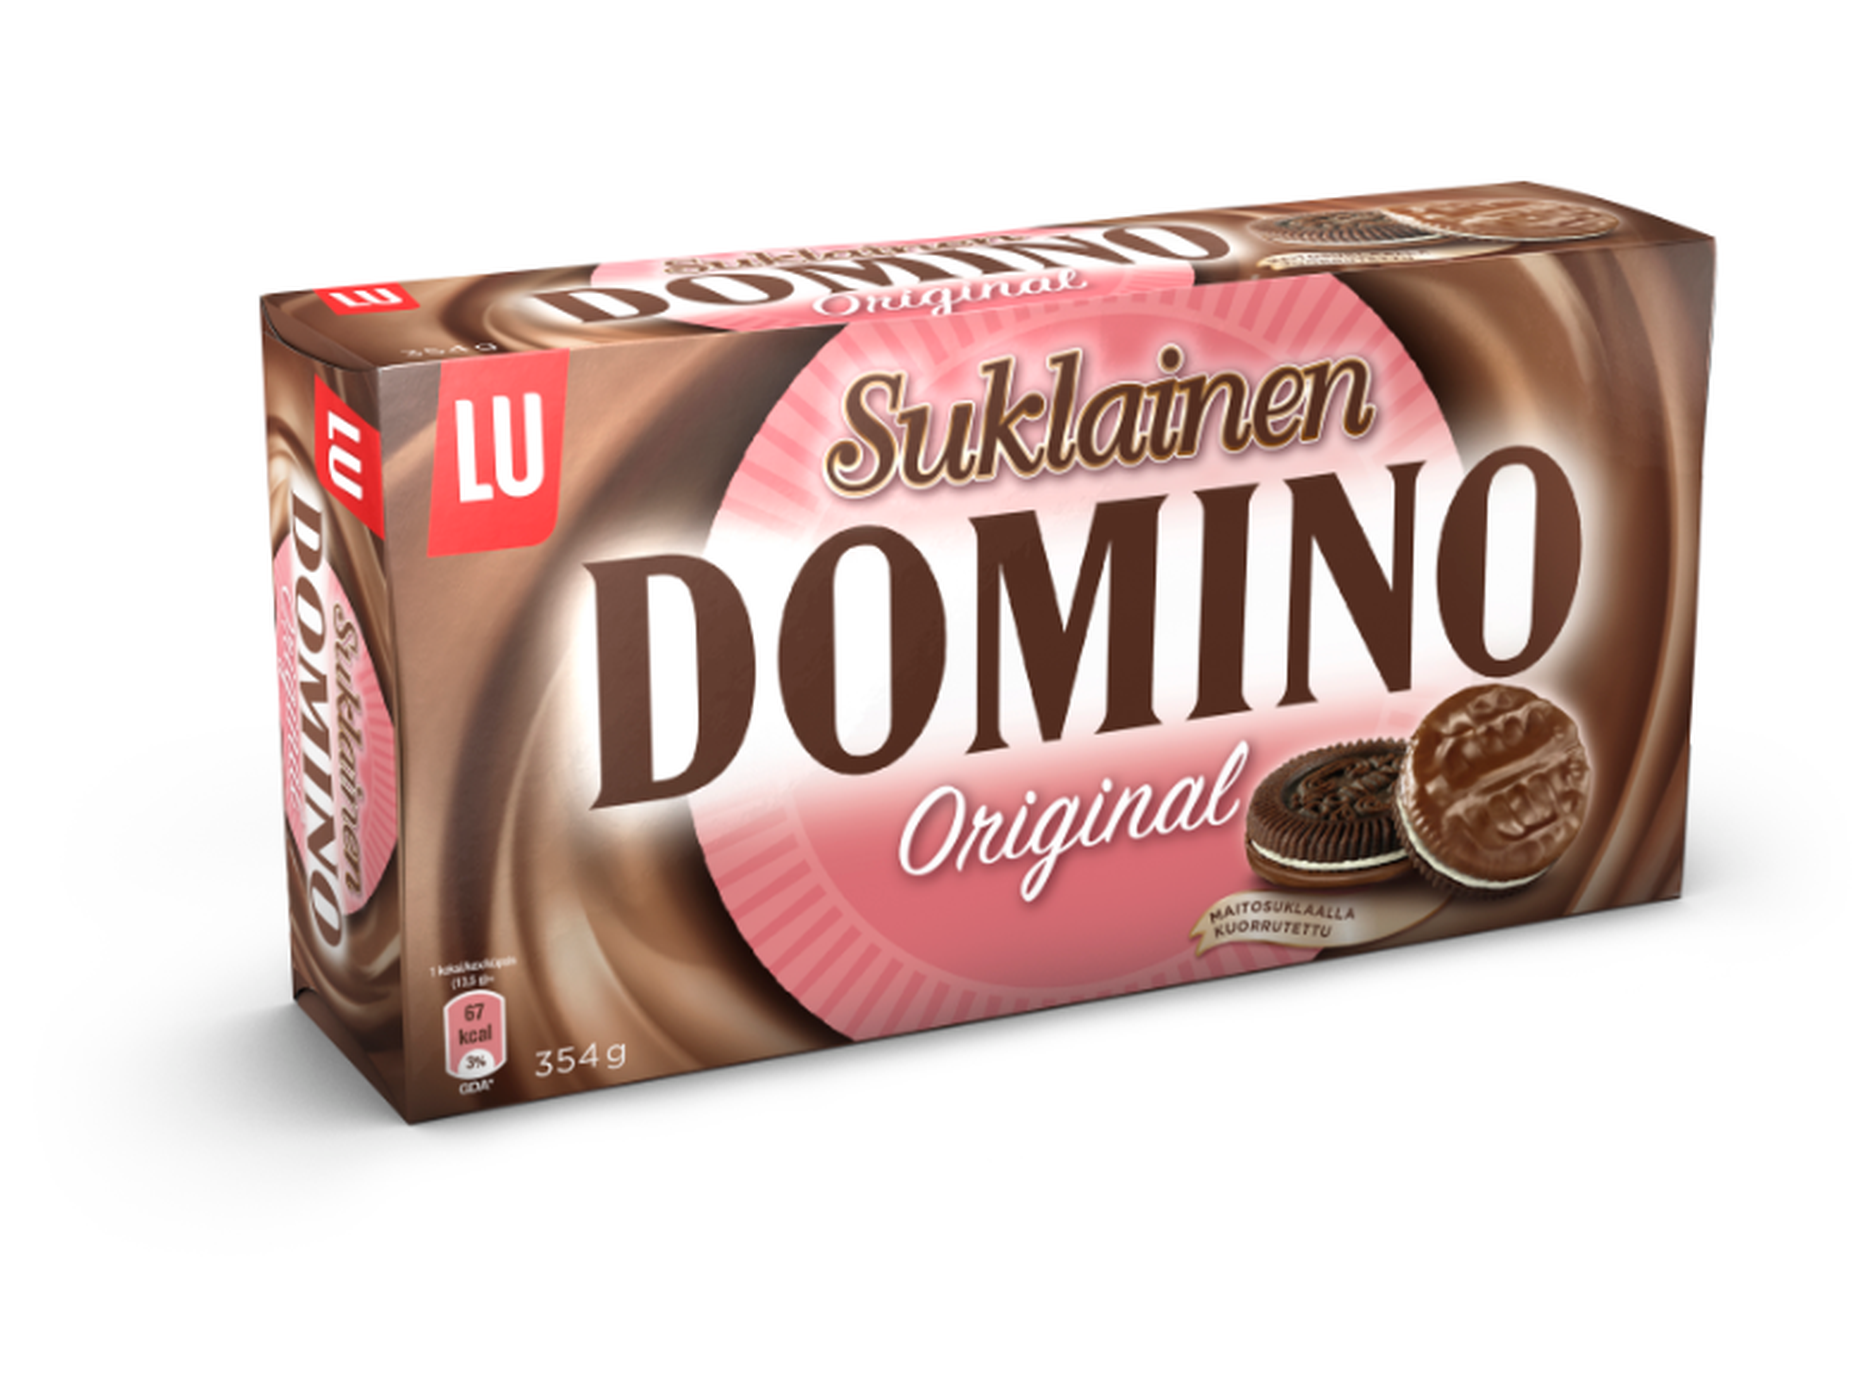 Domino šokolaadiglasuuriga küpsised.